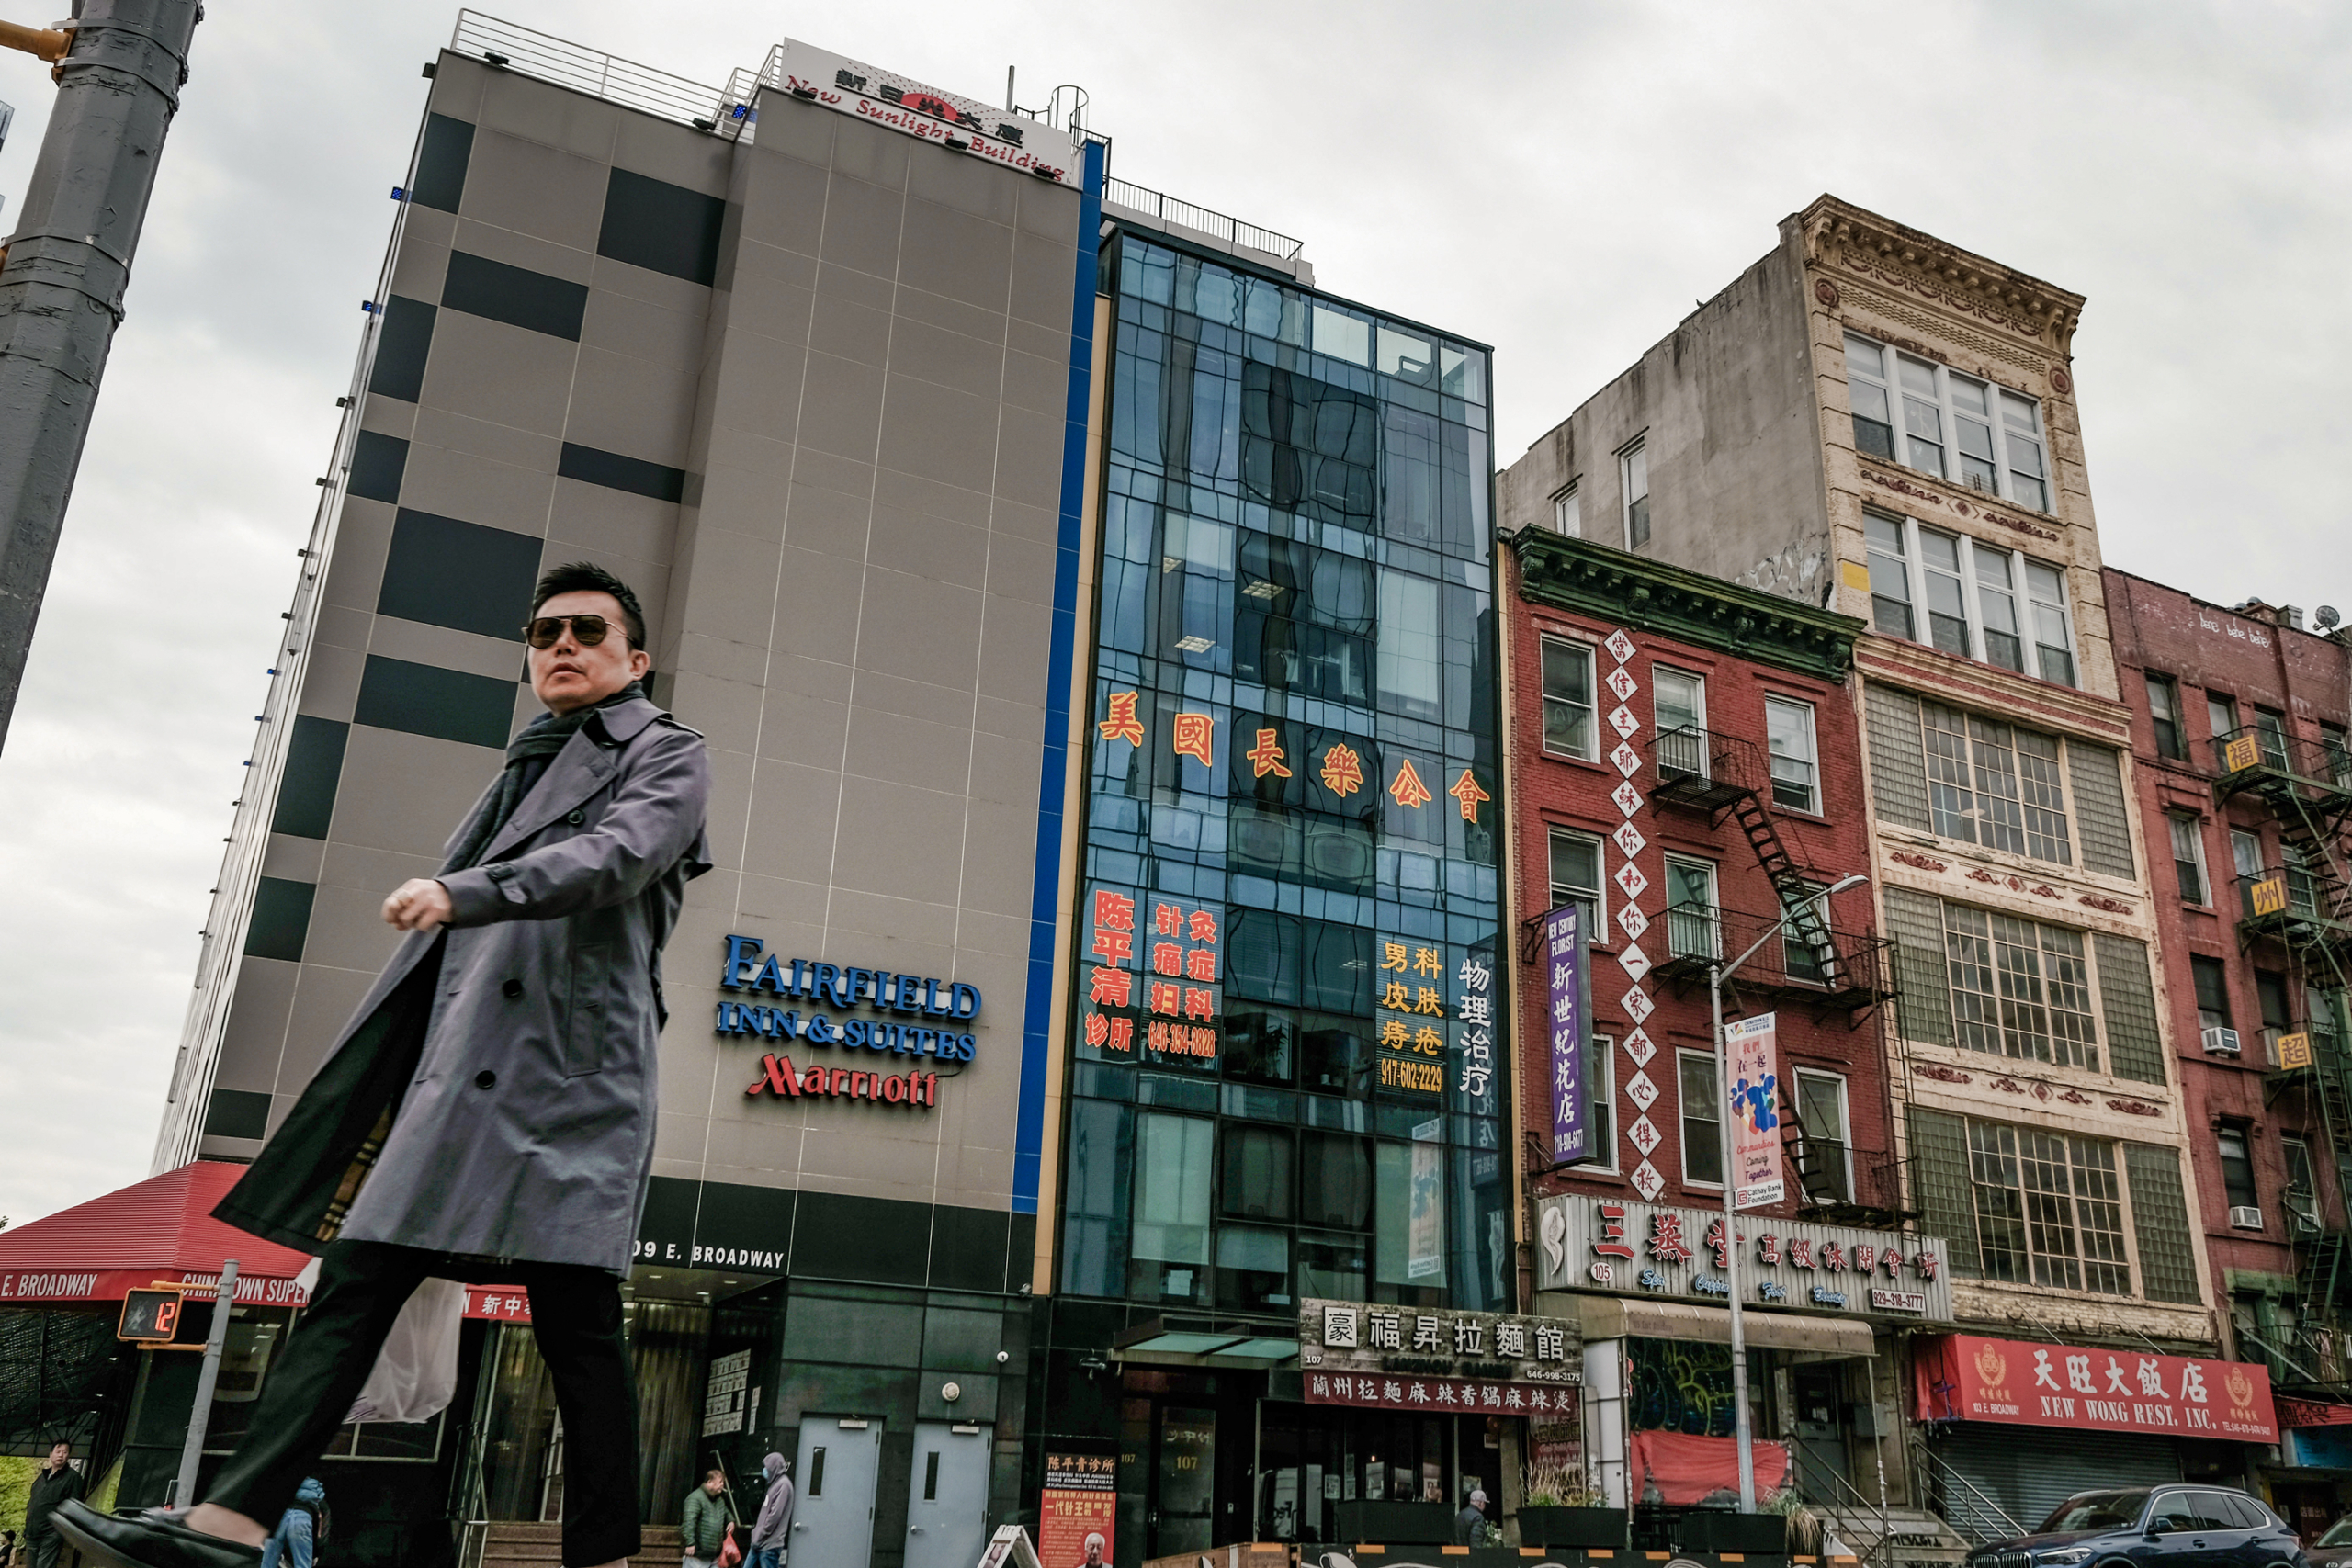 Một người đàn ông đi ngang qua một tòa nhà (ở giữa) bị nghi ngờ là đồn công an chìm do Bắc Kinh kiểm soát dùng để đàn áp những người bất đồng chính kiến đang sống ở Hoa Kỳ, tại khu phố người Hoa của thành phố New York hôm 18/04/2023. (Ảnh: Spencer Platt/Getty Images)